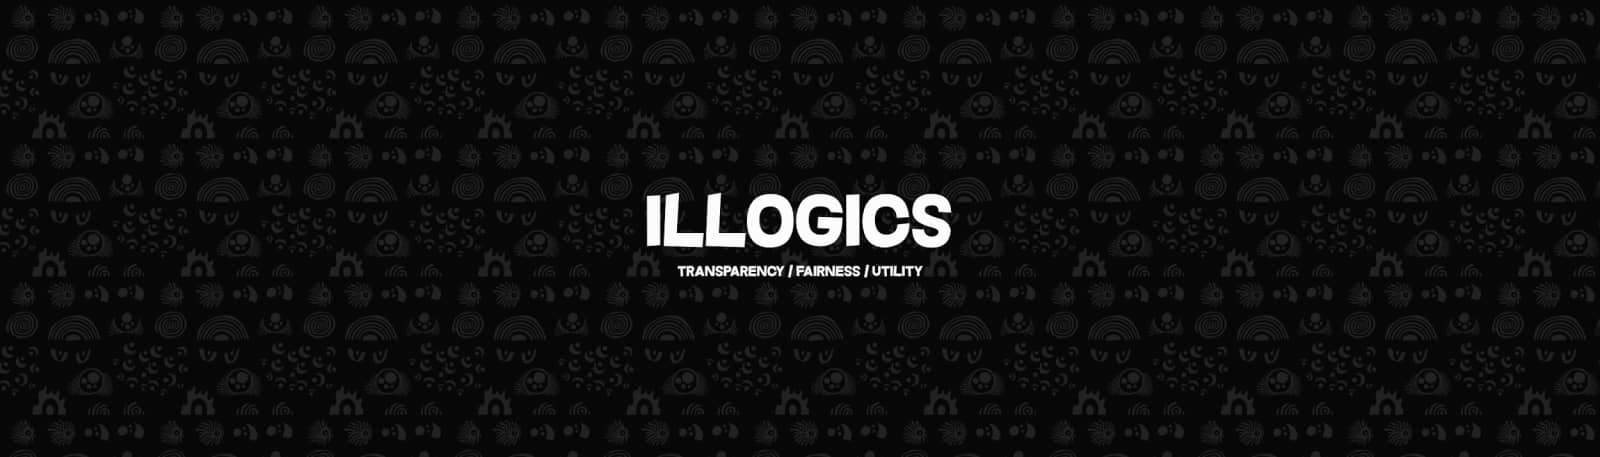 illogics